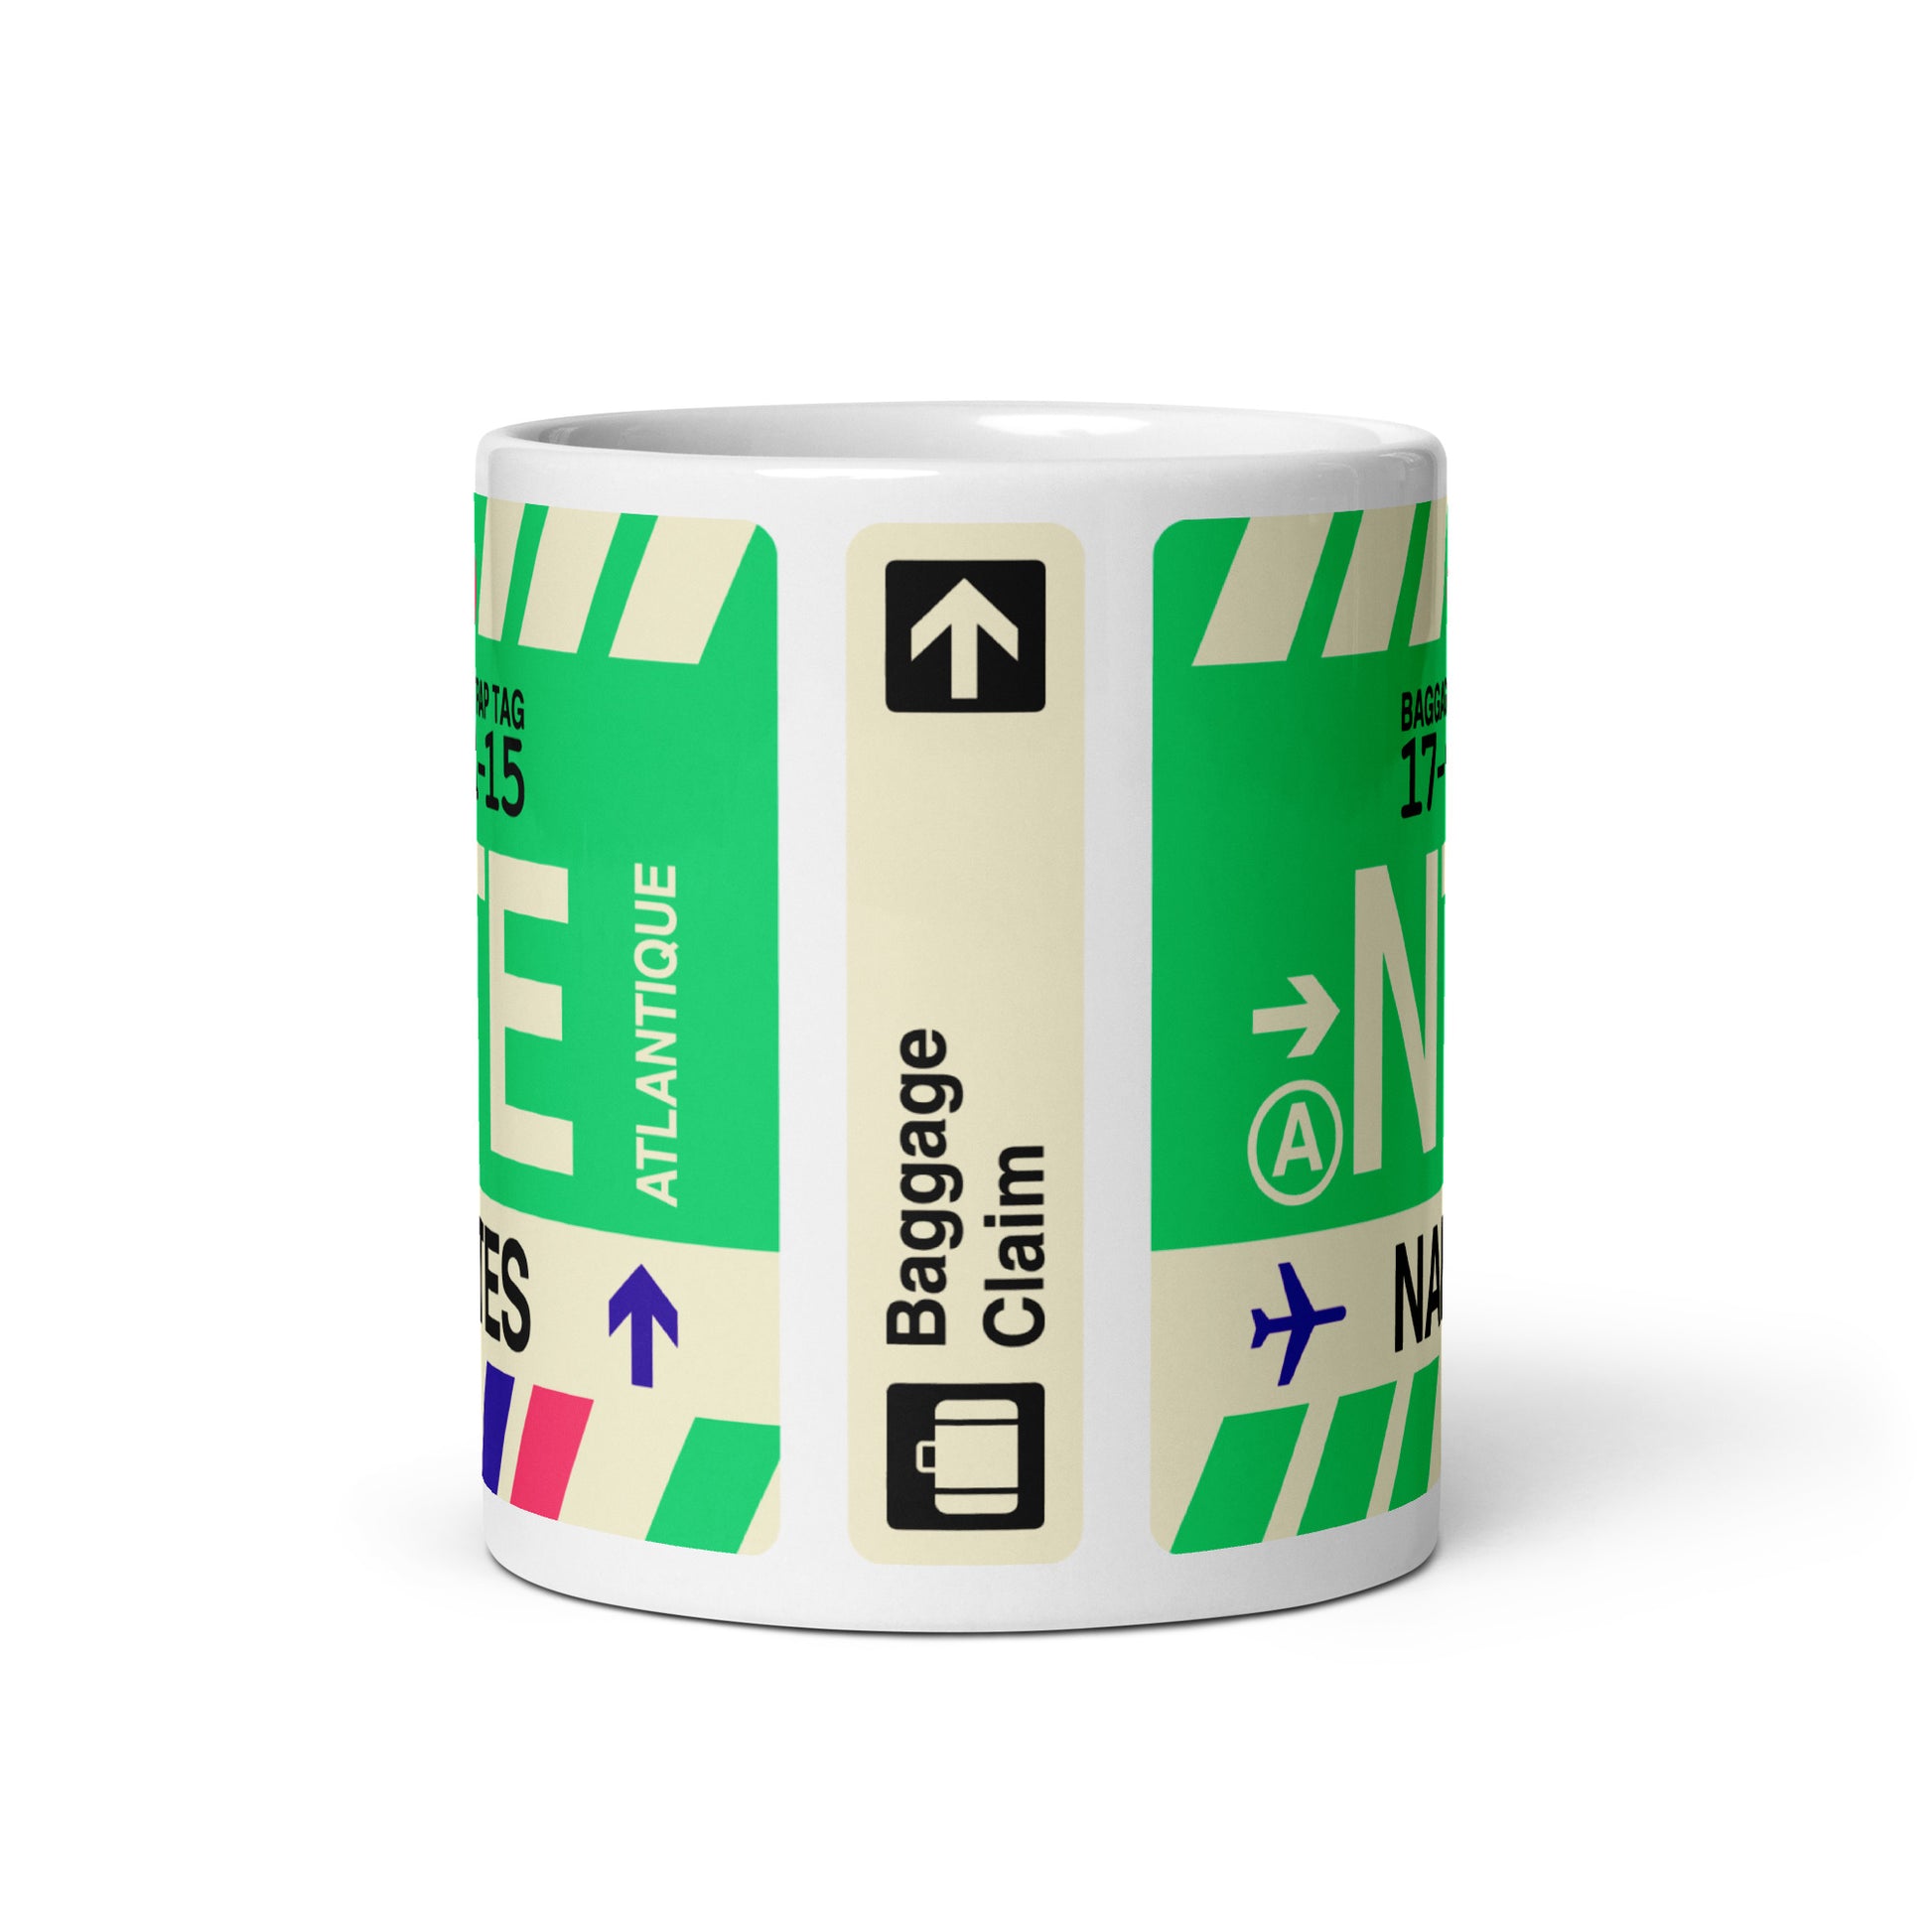 Travel-Themed Coffee Mug • NTE Nantes • YHM Designs - Image 02